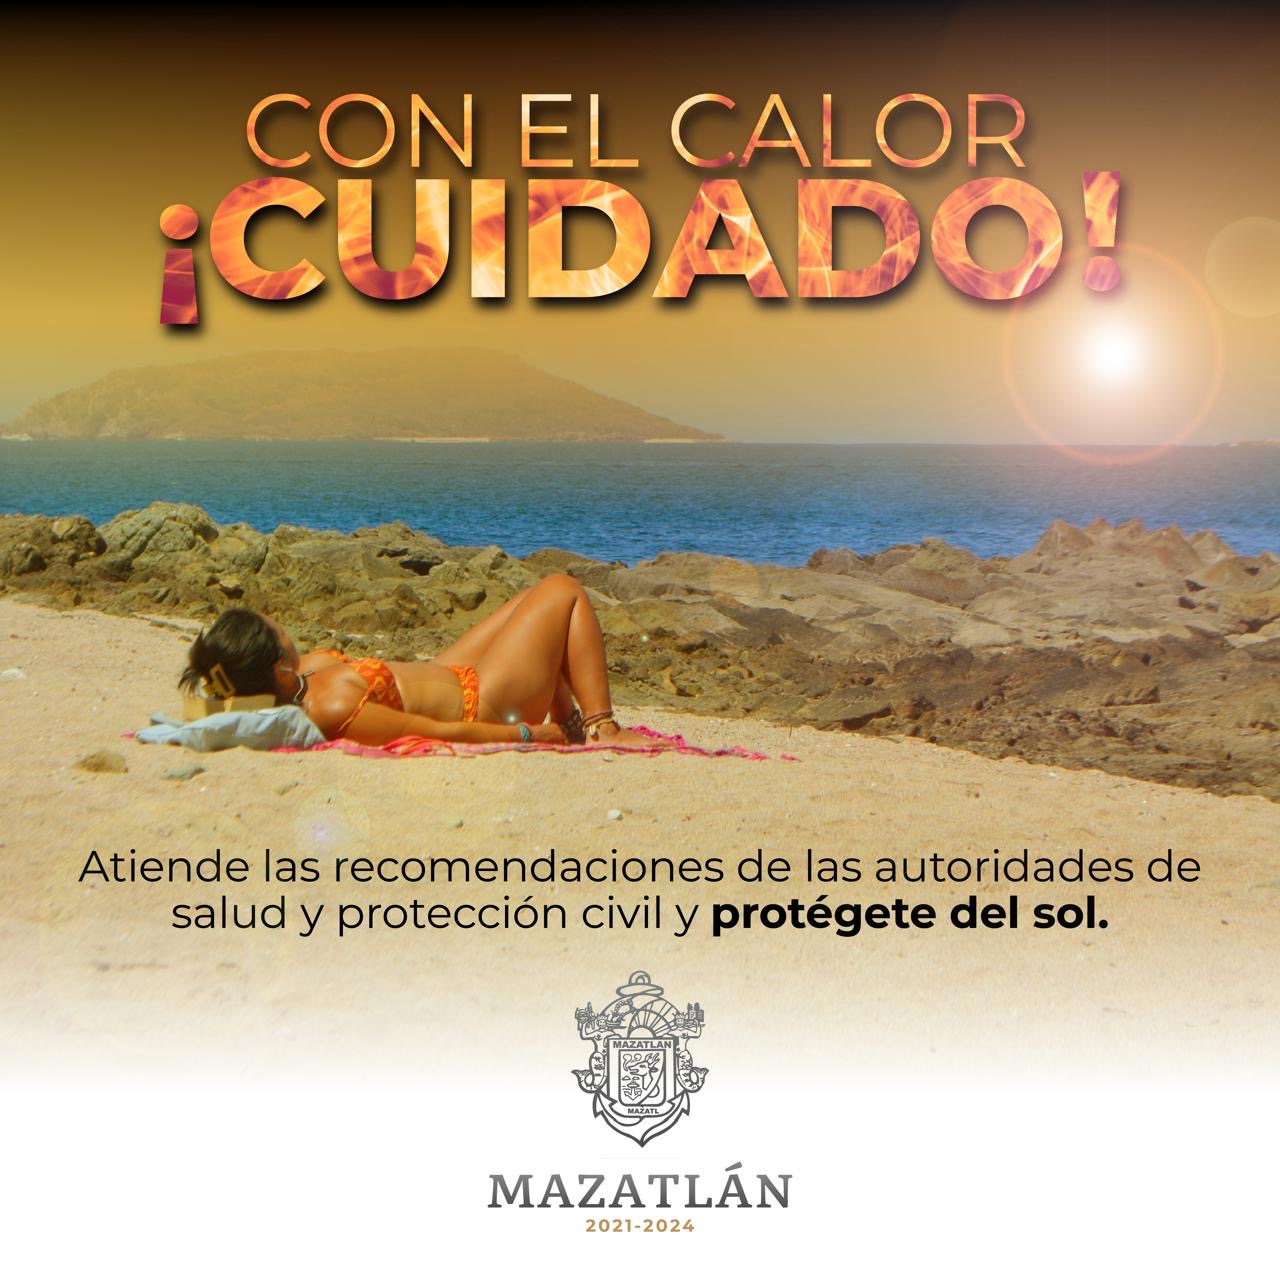 Importante seguir las recomendaciones para evitar golpes de calor en Mazatlán: Alcalde